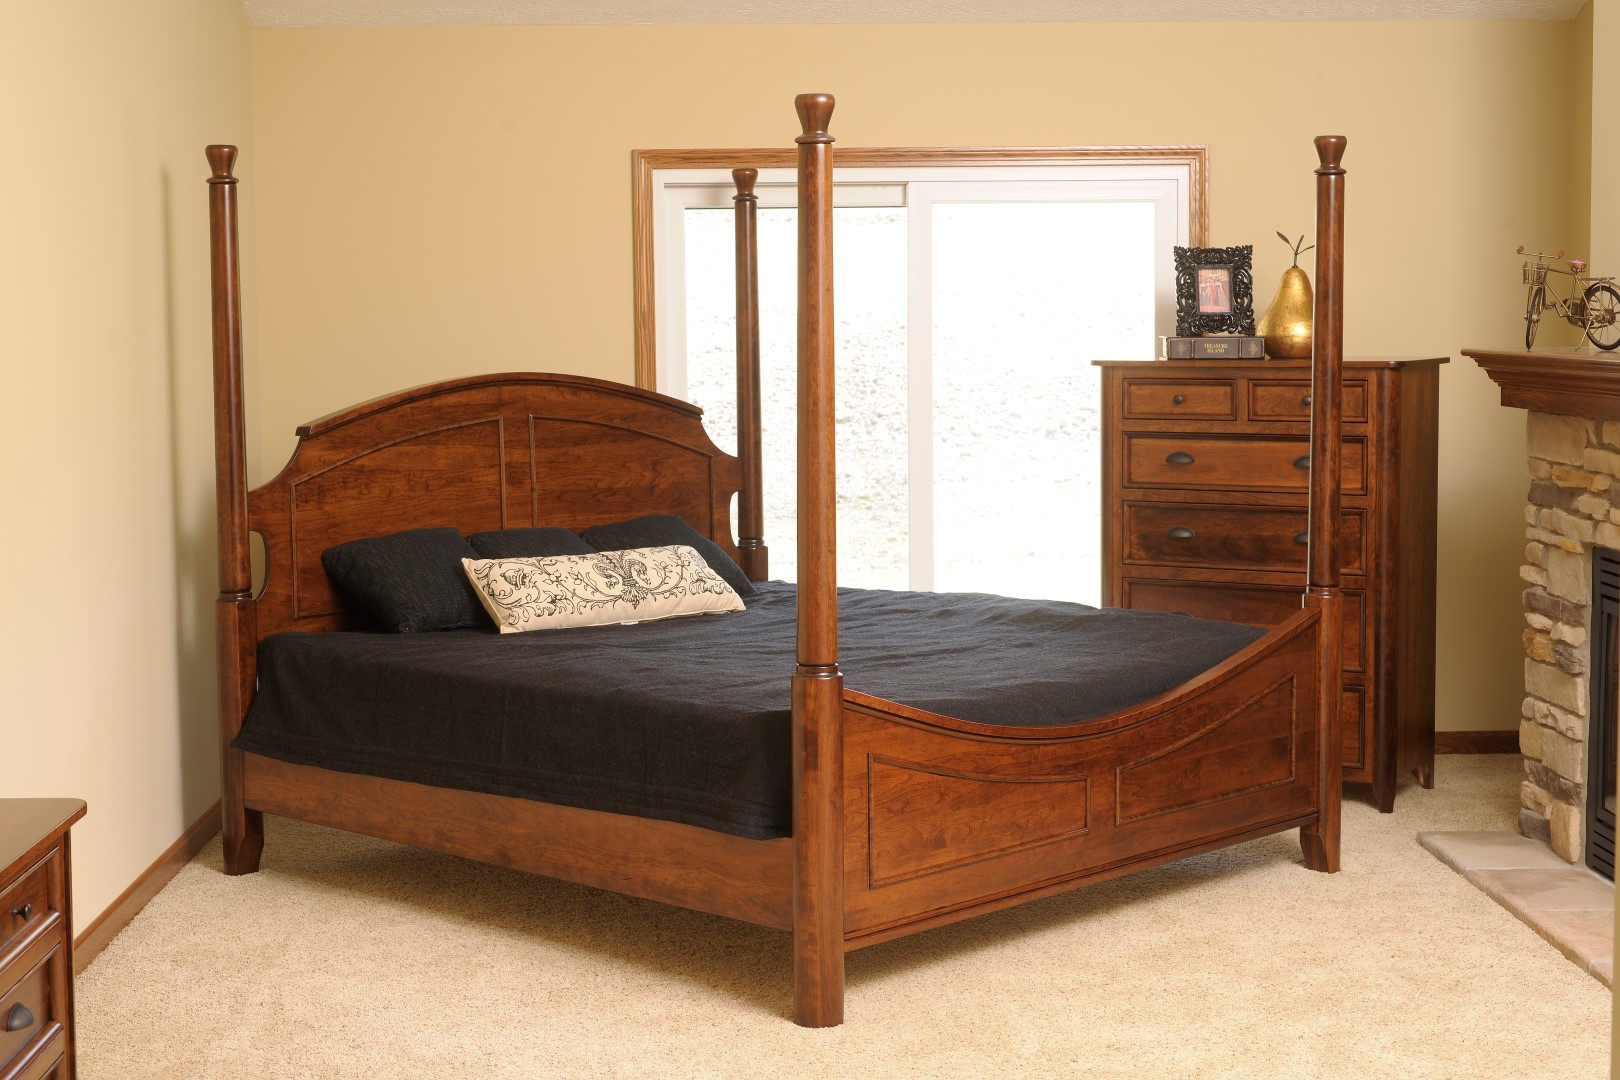 the hudson bay bedroom furniture